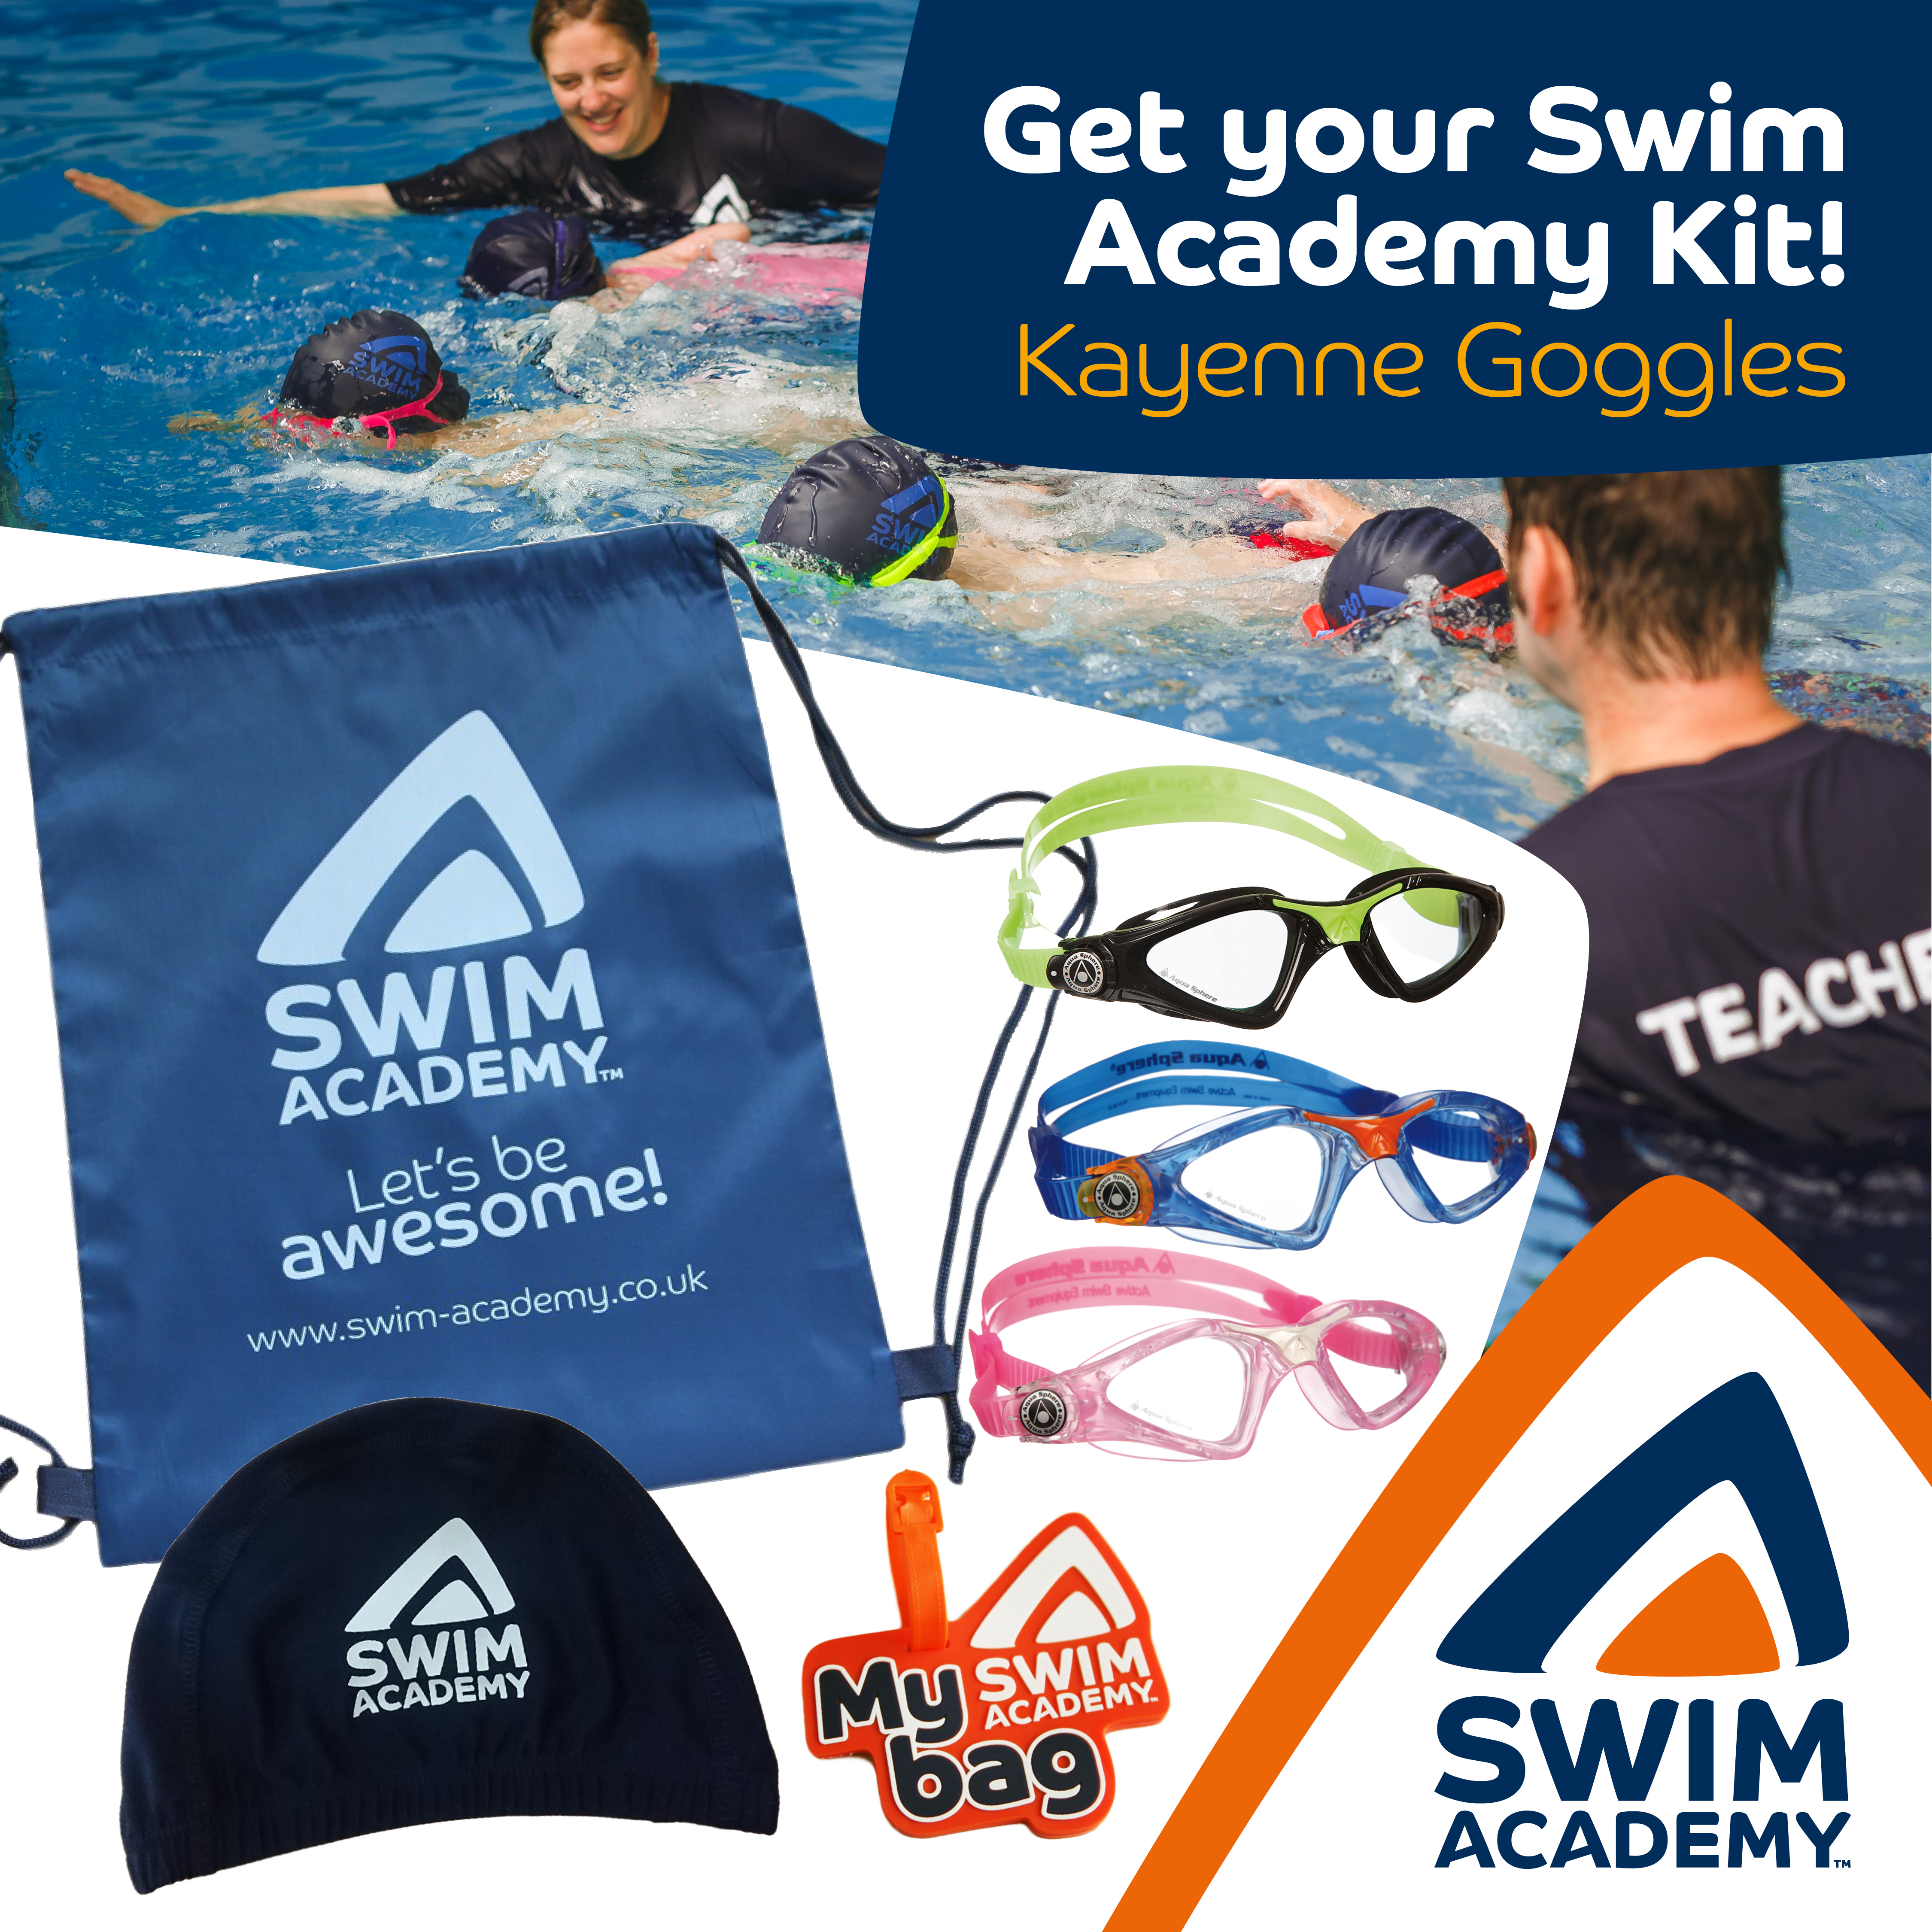 Swim Academy Kit with Aquasphere Kayenne Jr Goggles